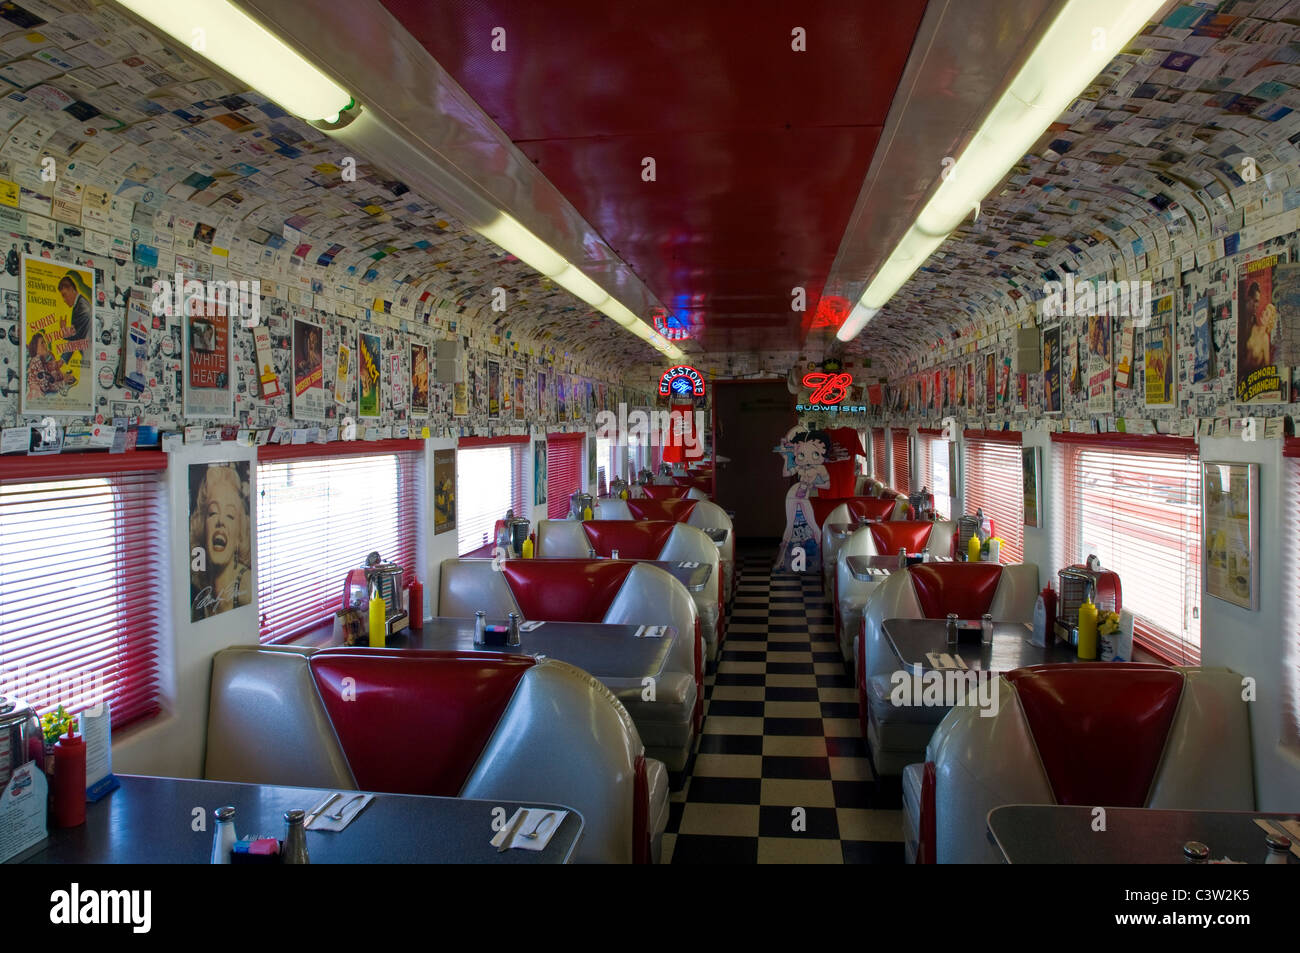 Style des années 1950 Rock n' Roll Diner dans un ancien wagon de train converti coach, Oceano, California Banque D'Images